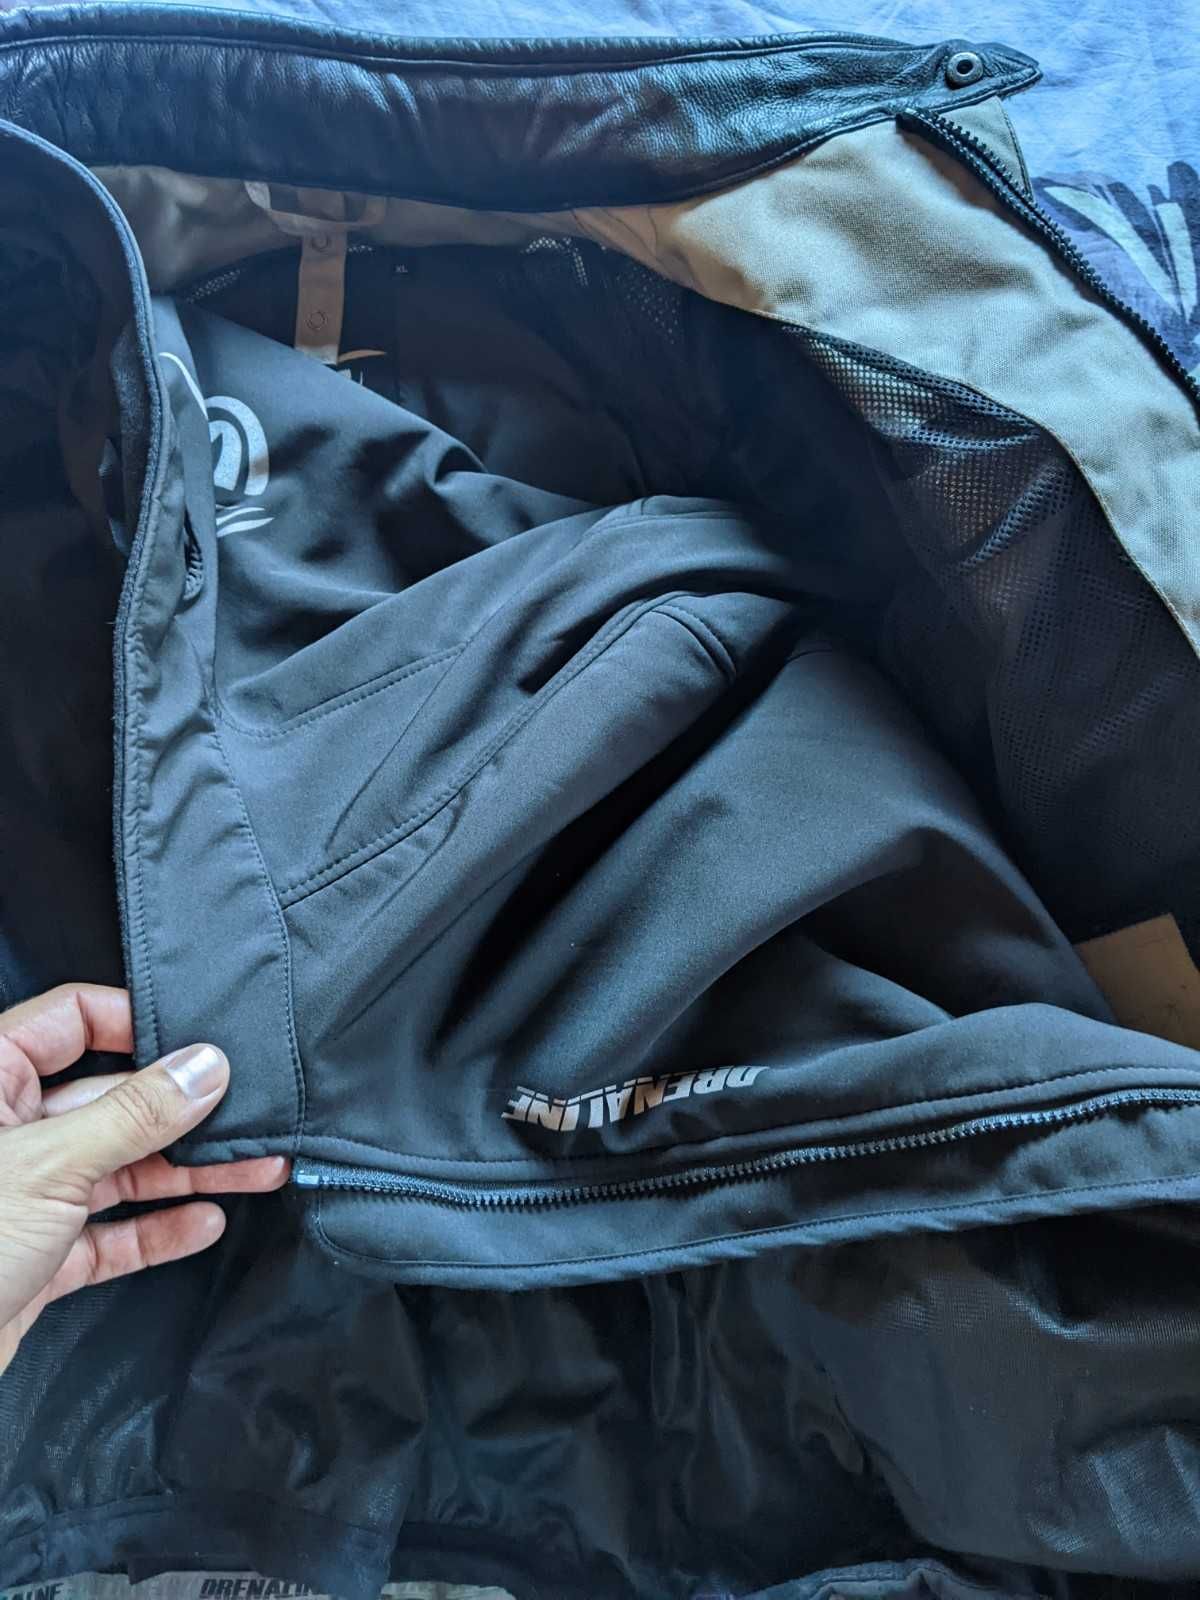 Fato (casaco e calças) para mota, Drenaline Atlas